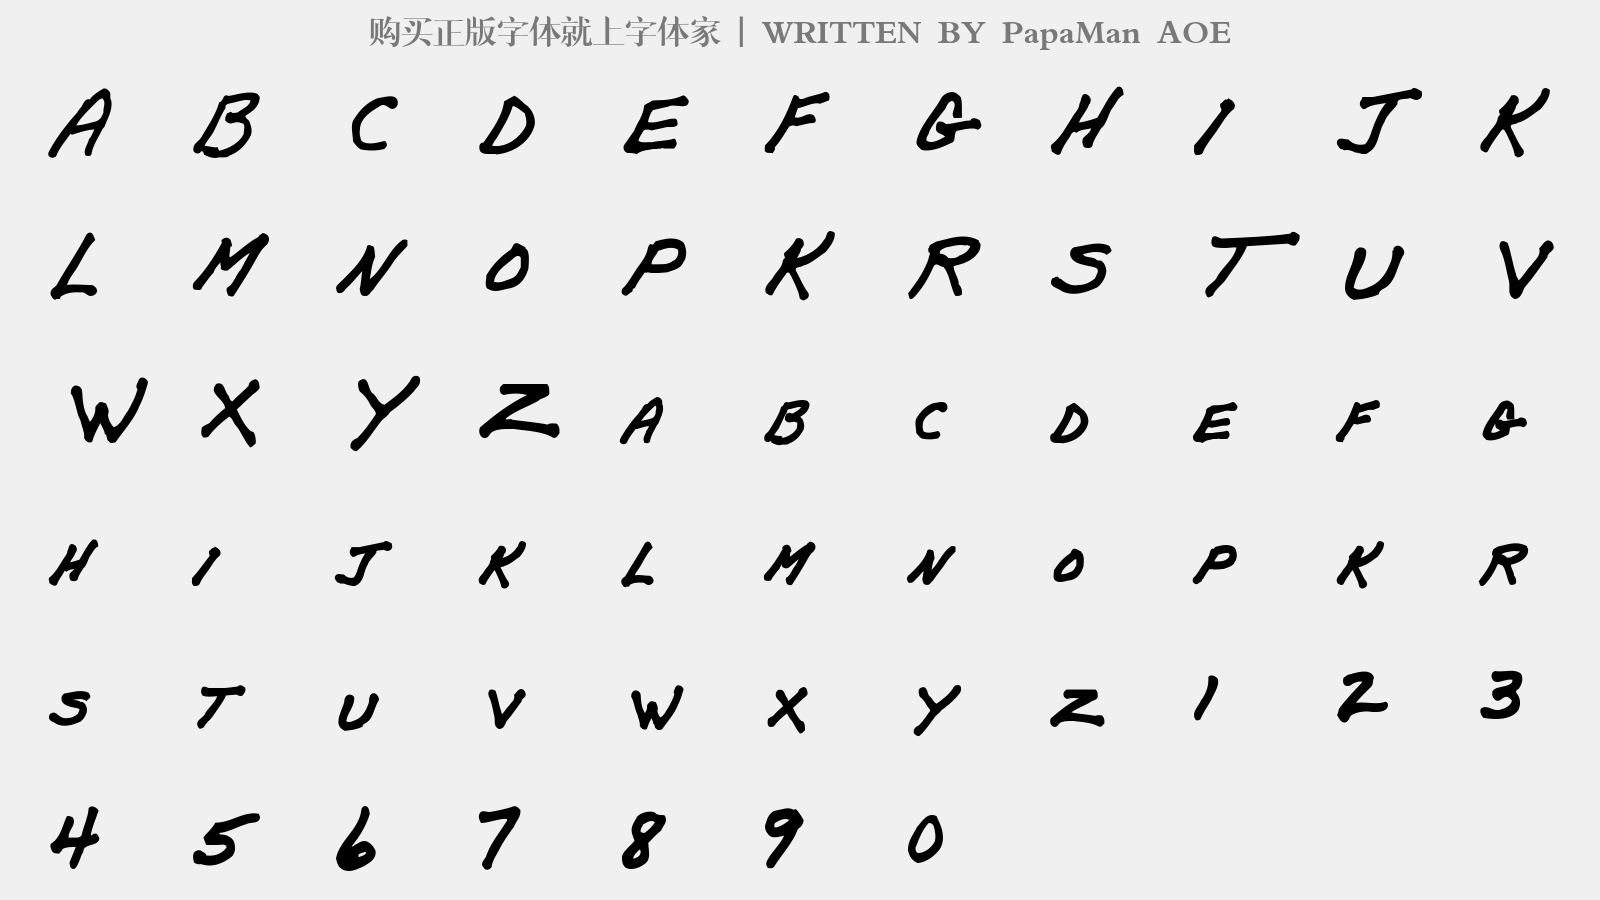 PapaMan AOE - 大写字母/小写字母/数字